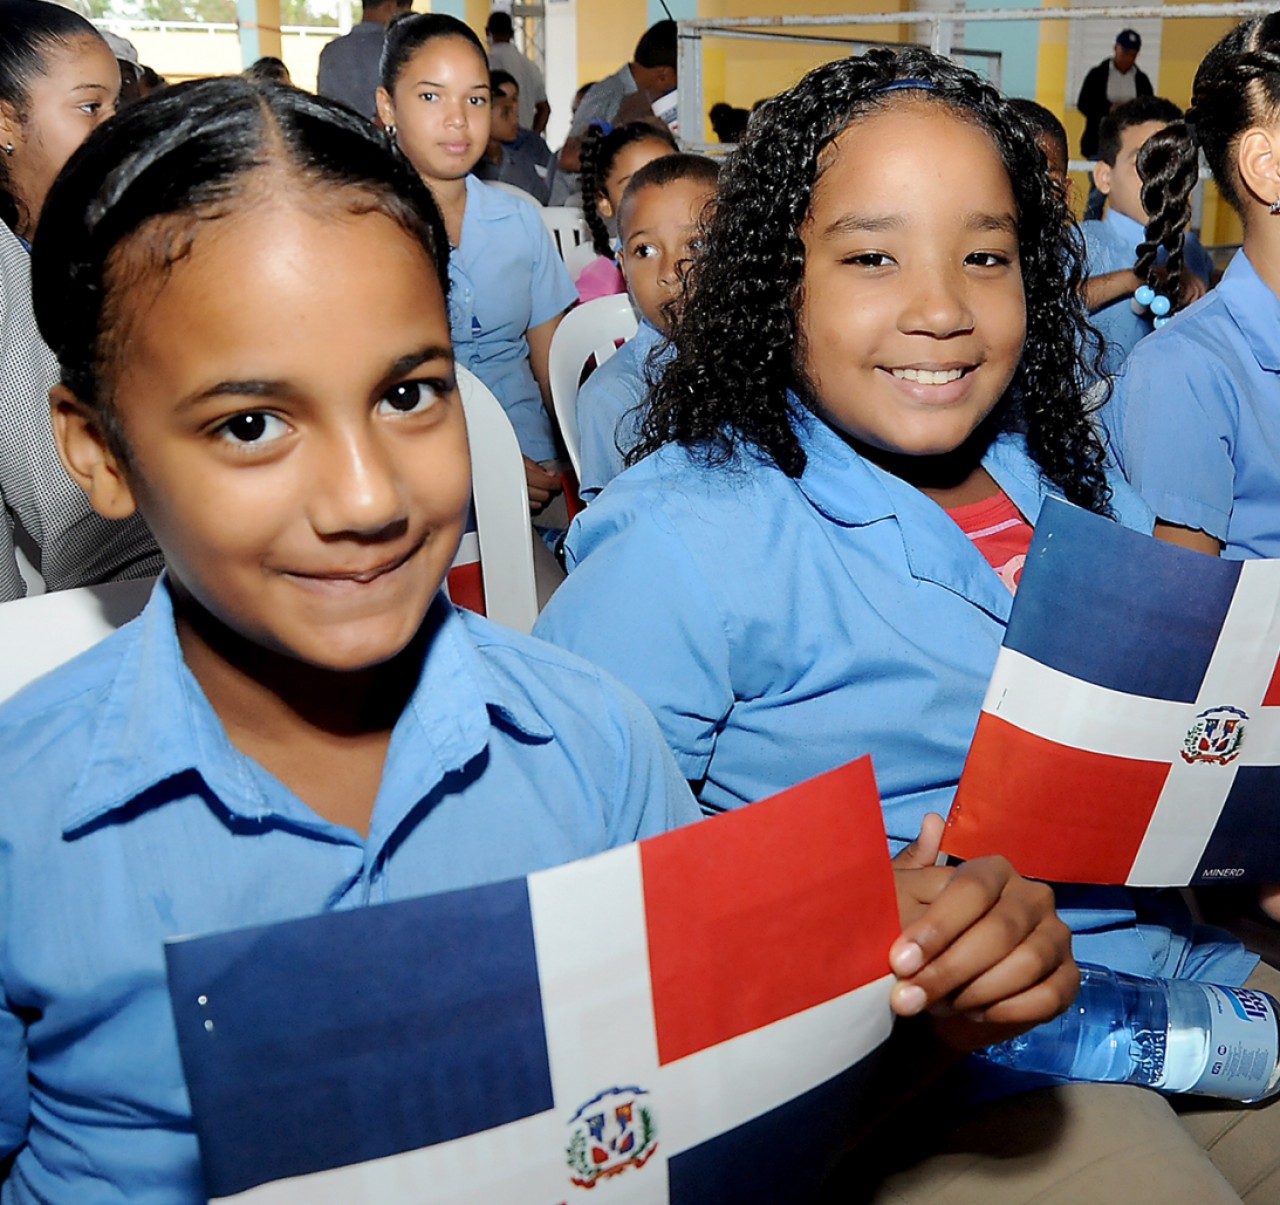  imagen Estudiantes sosteniendo bandera de la República Dominicana durante inauguración de centros educativos en Santiago  